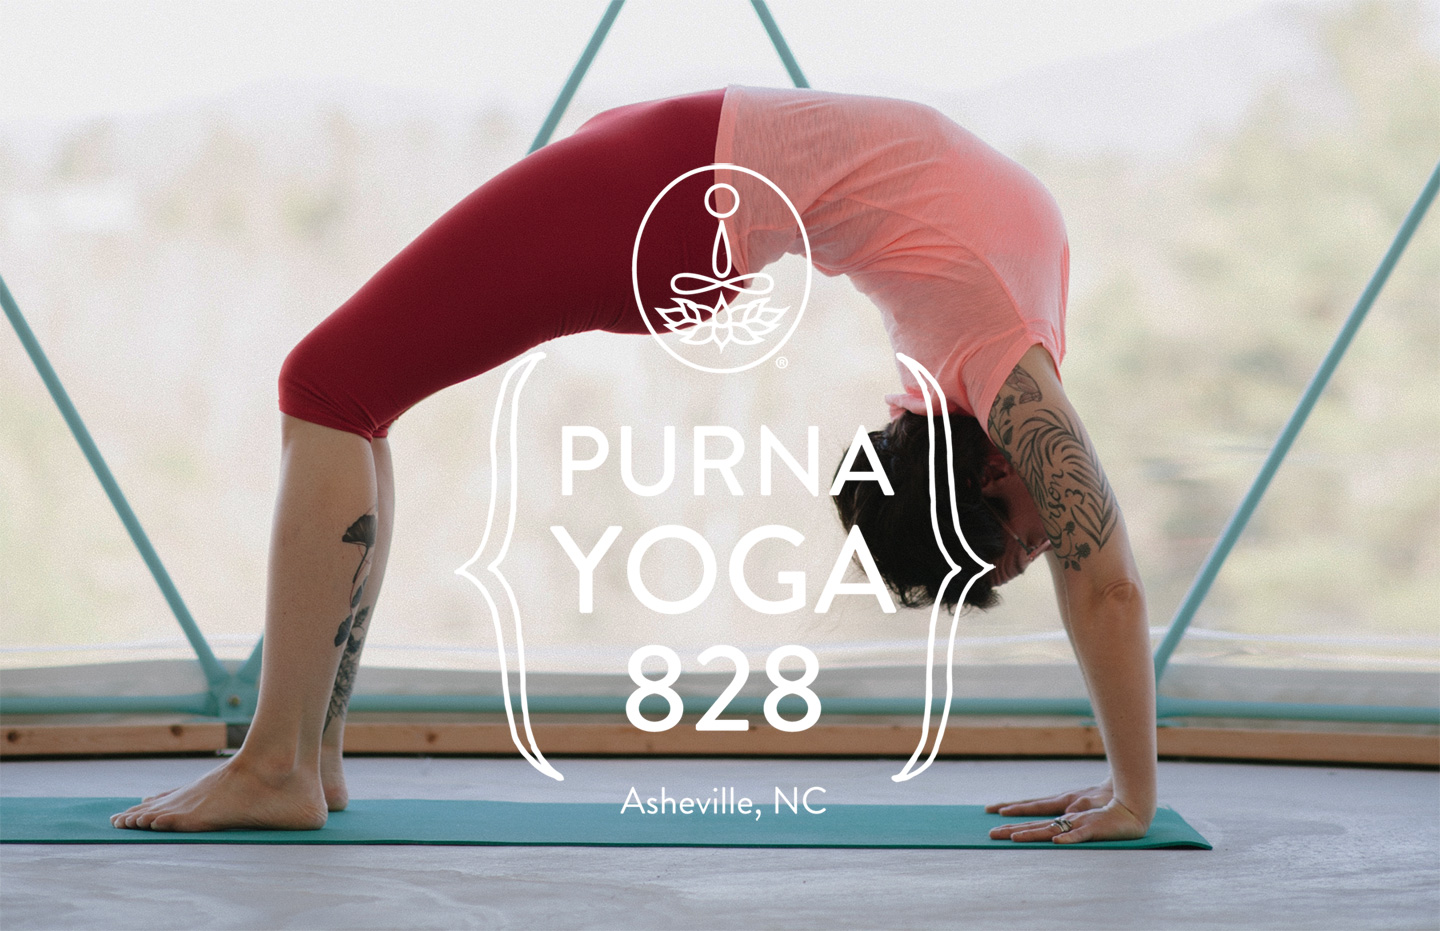 Purna Yoga 828